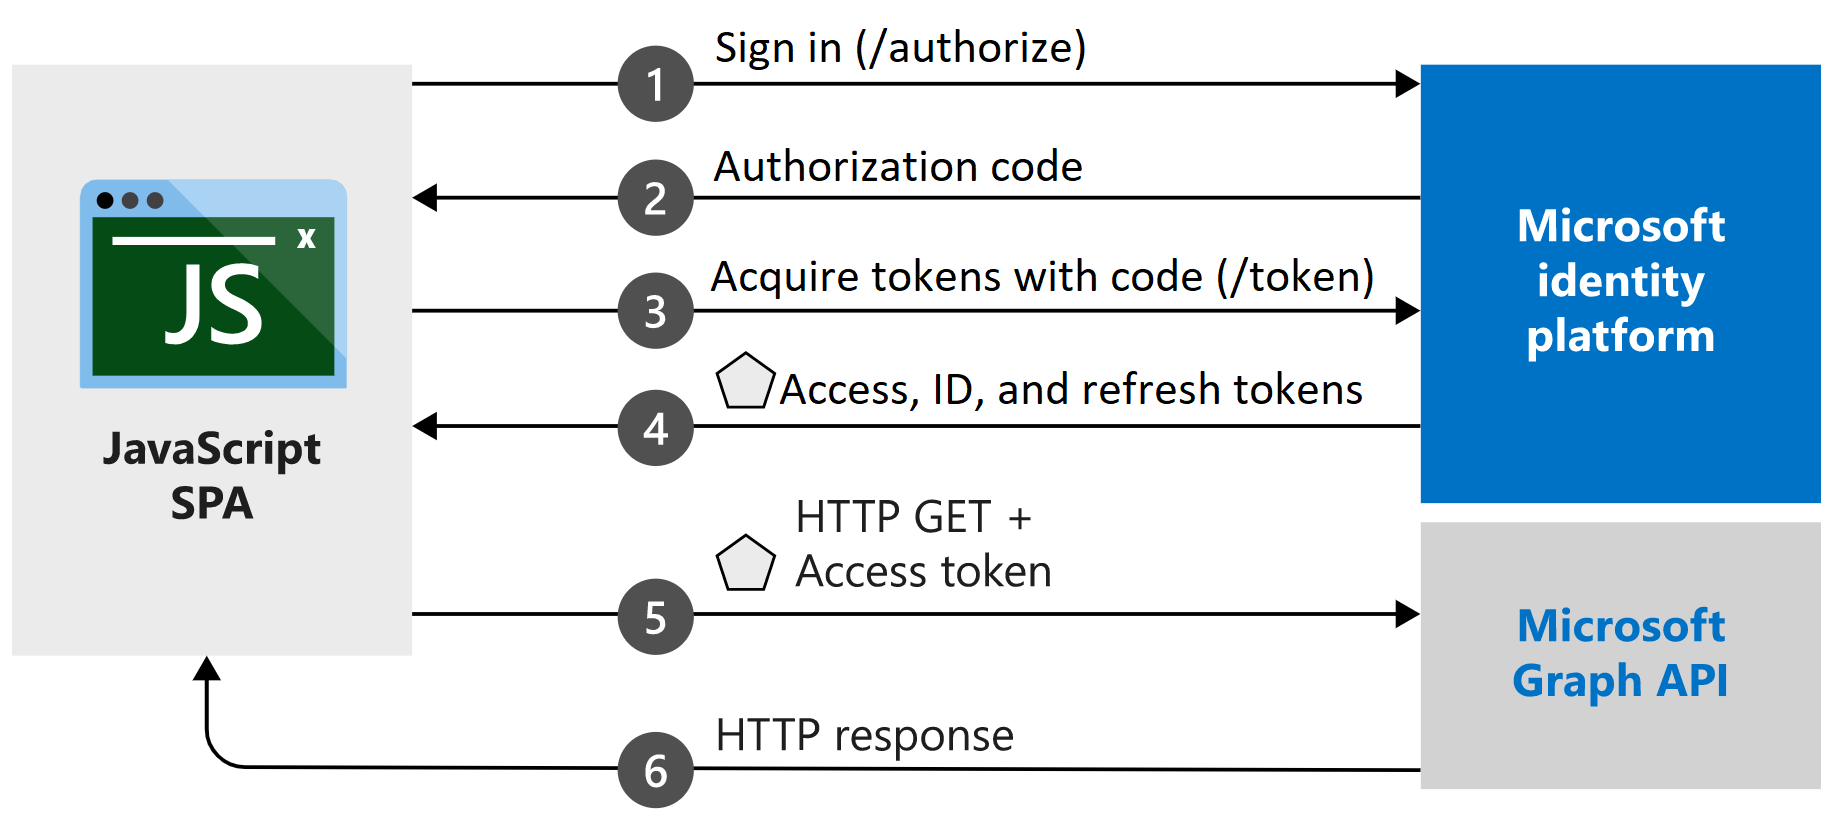 Diagrama que muestra el flujo de código de autorización para una aplicación de página única